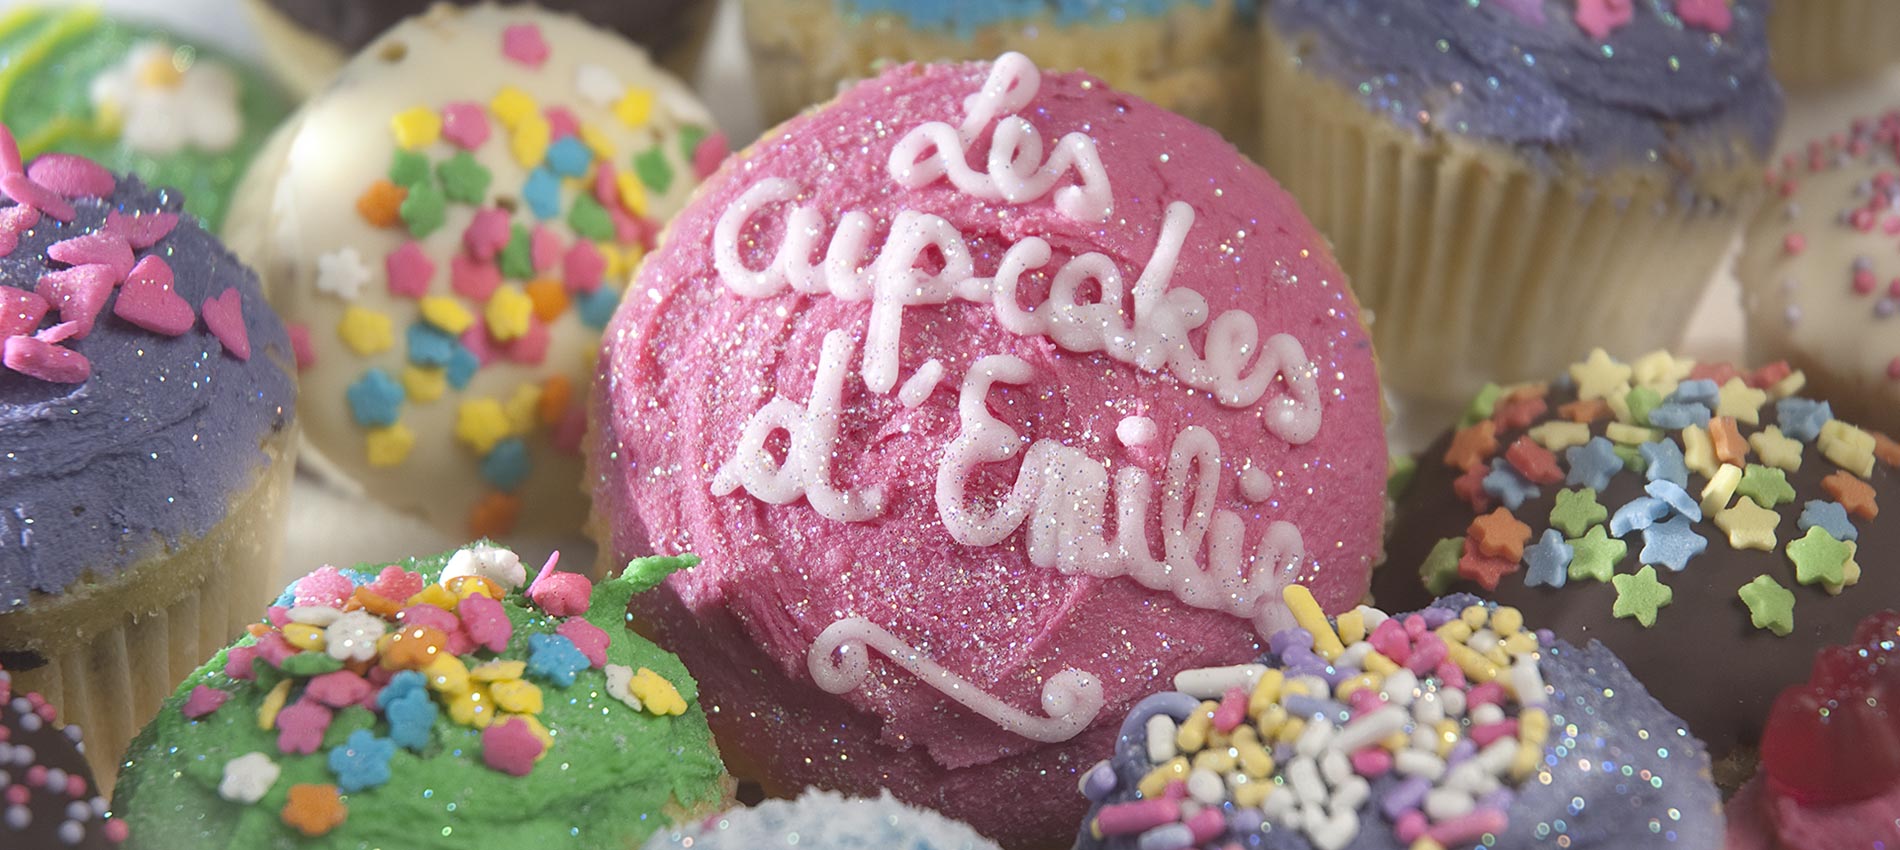 Corporate / Société &mdash; Les Cupcakes d'Emilie